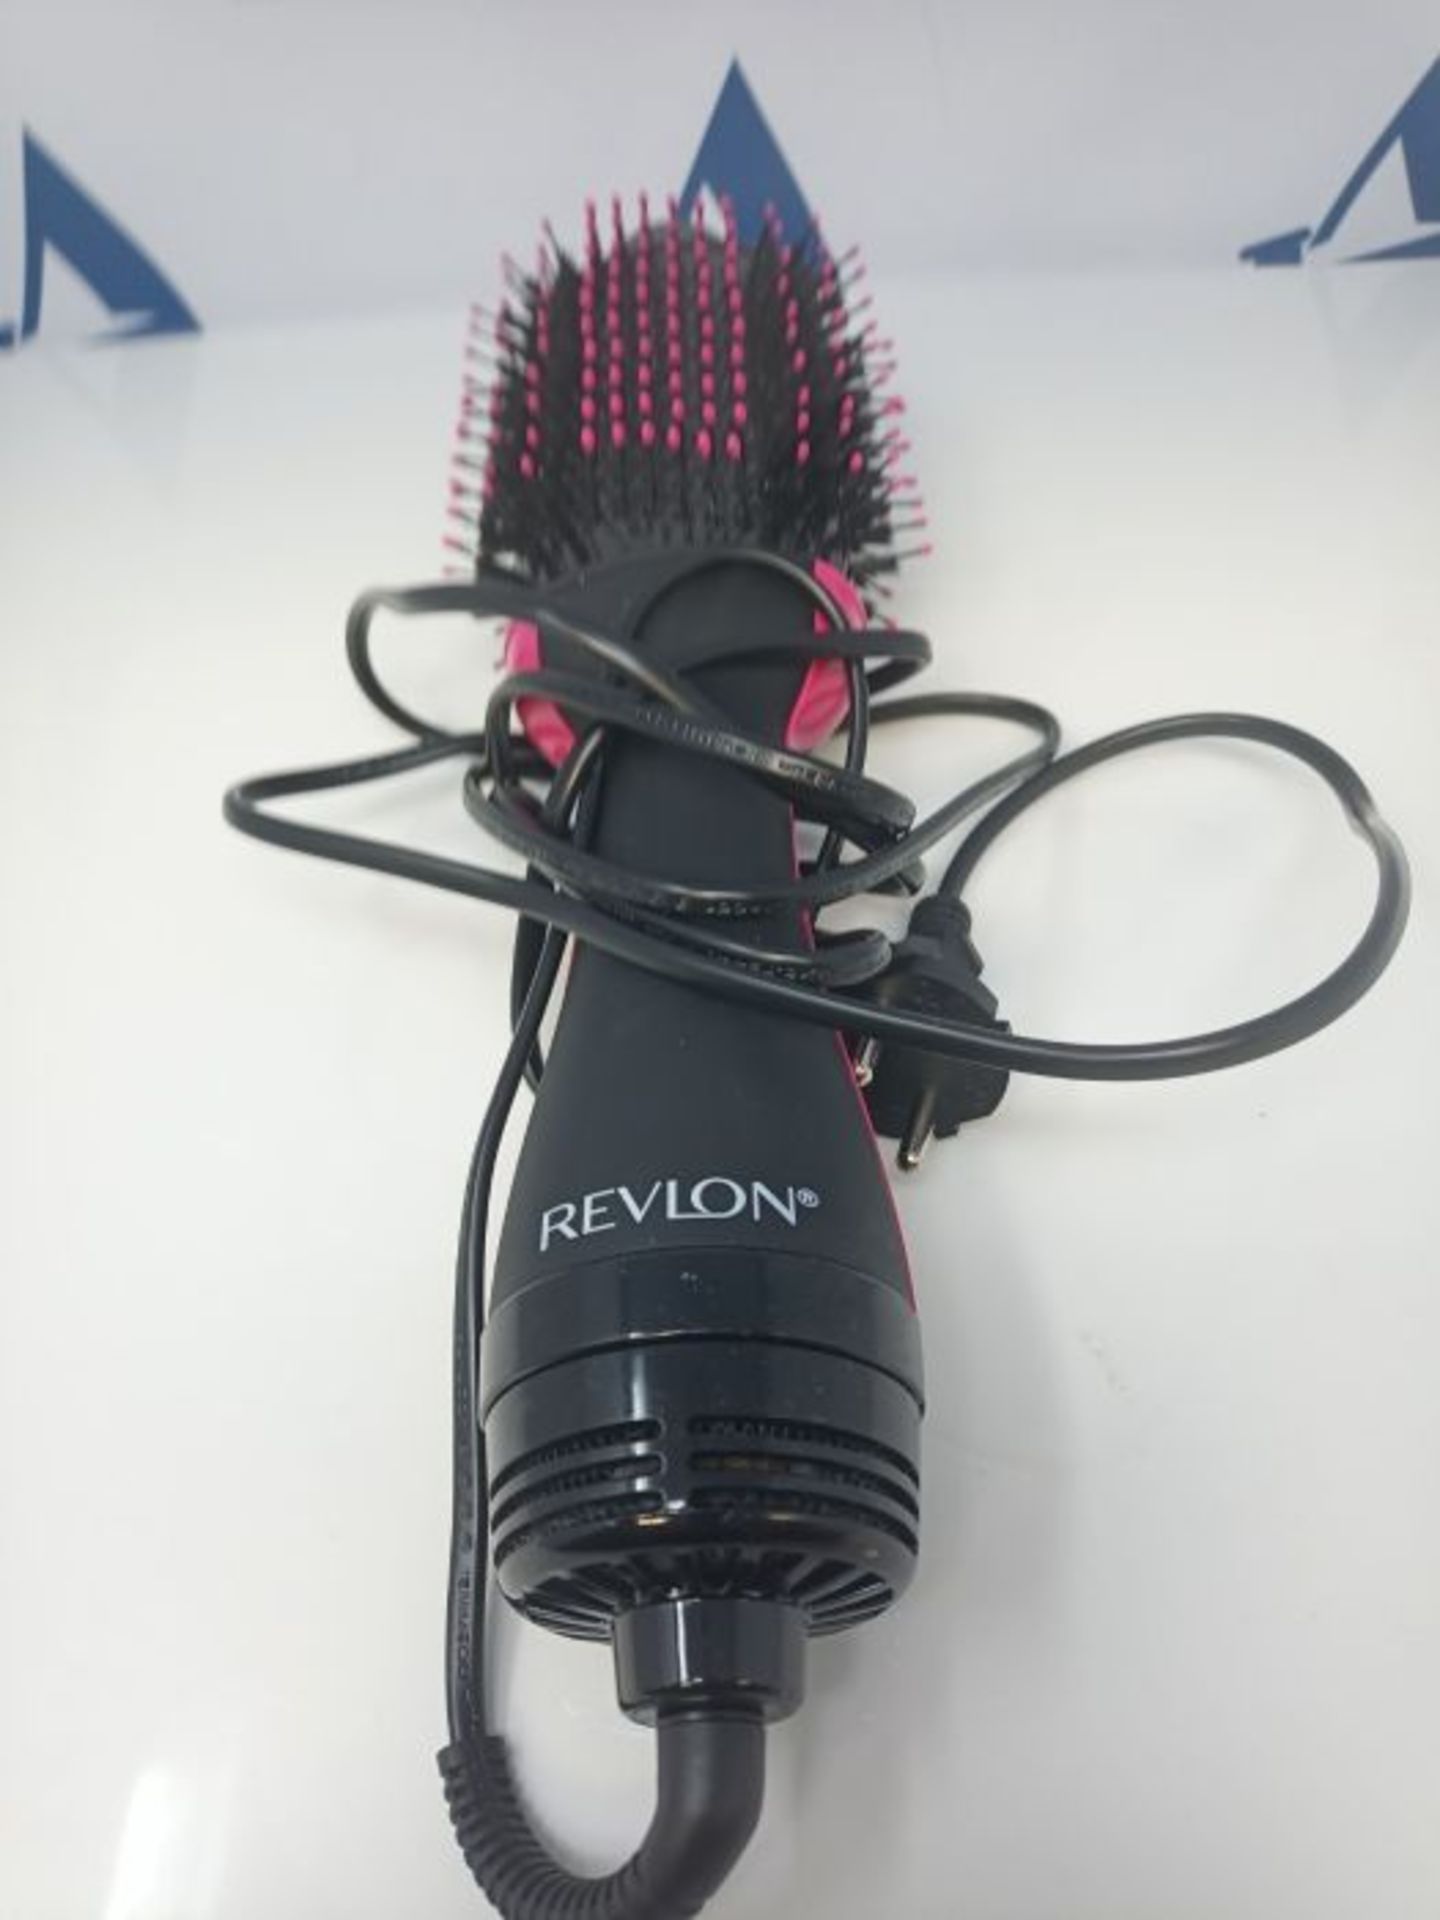 Revlon RVDR5222E2 Salon One-Step Hair Asciugacapelli e Volumizzante, 800 W, Nero/Rosa - Image 3 of 3